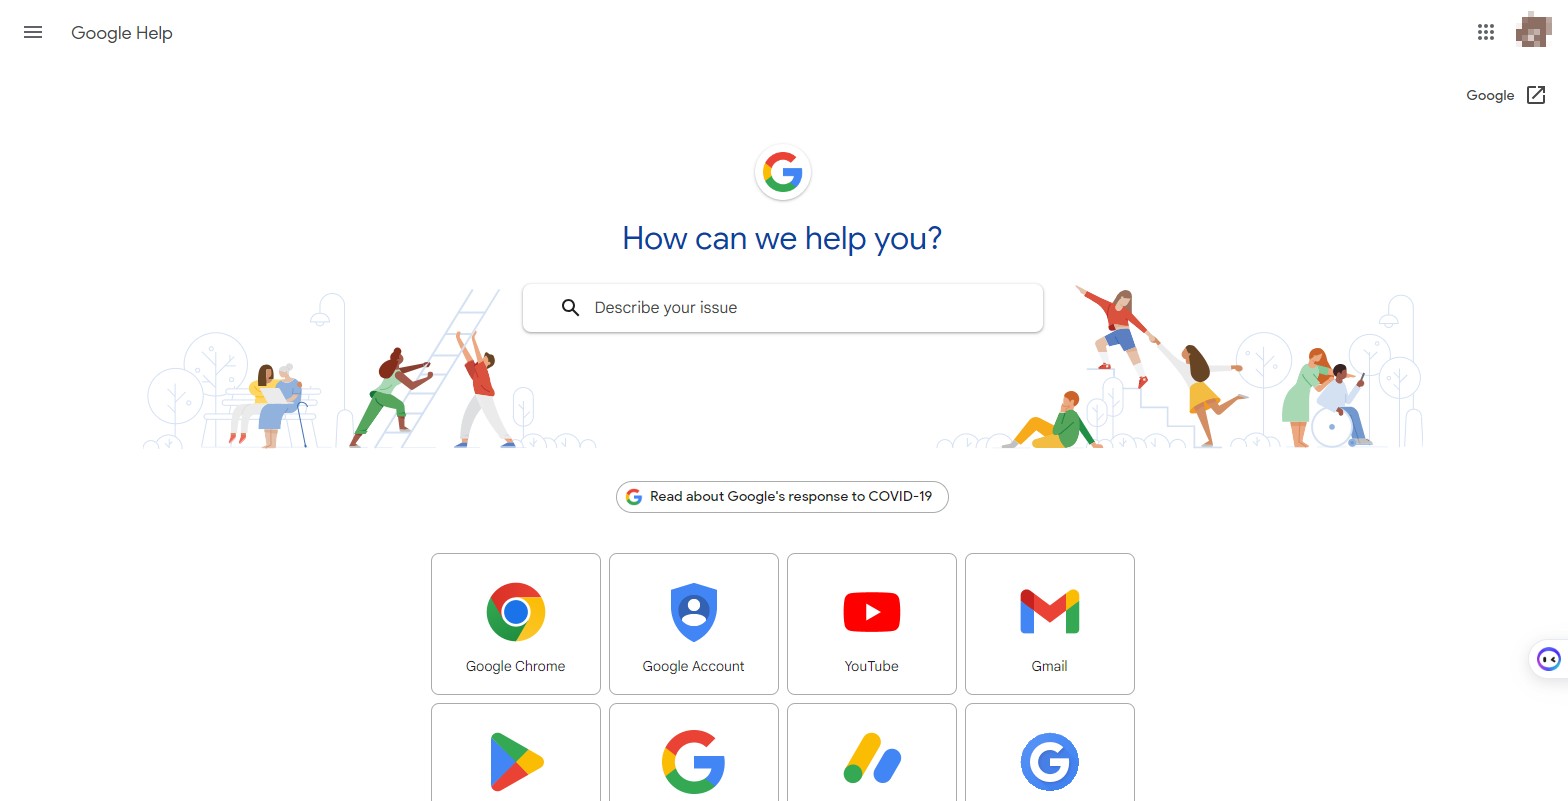 para obtener mÃ¡s ayuda, ponte en contacto con el servicio de asistencia de google